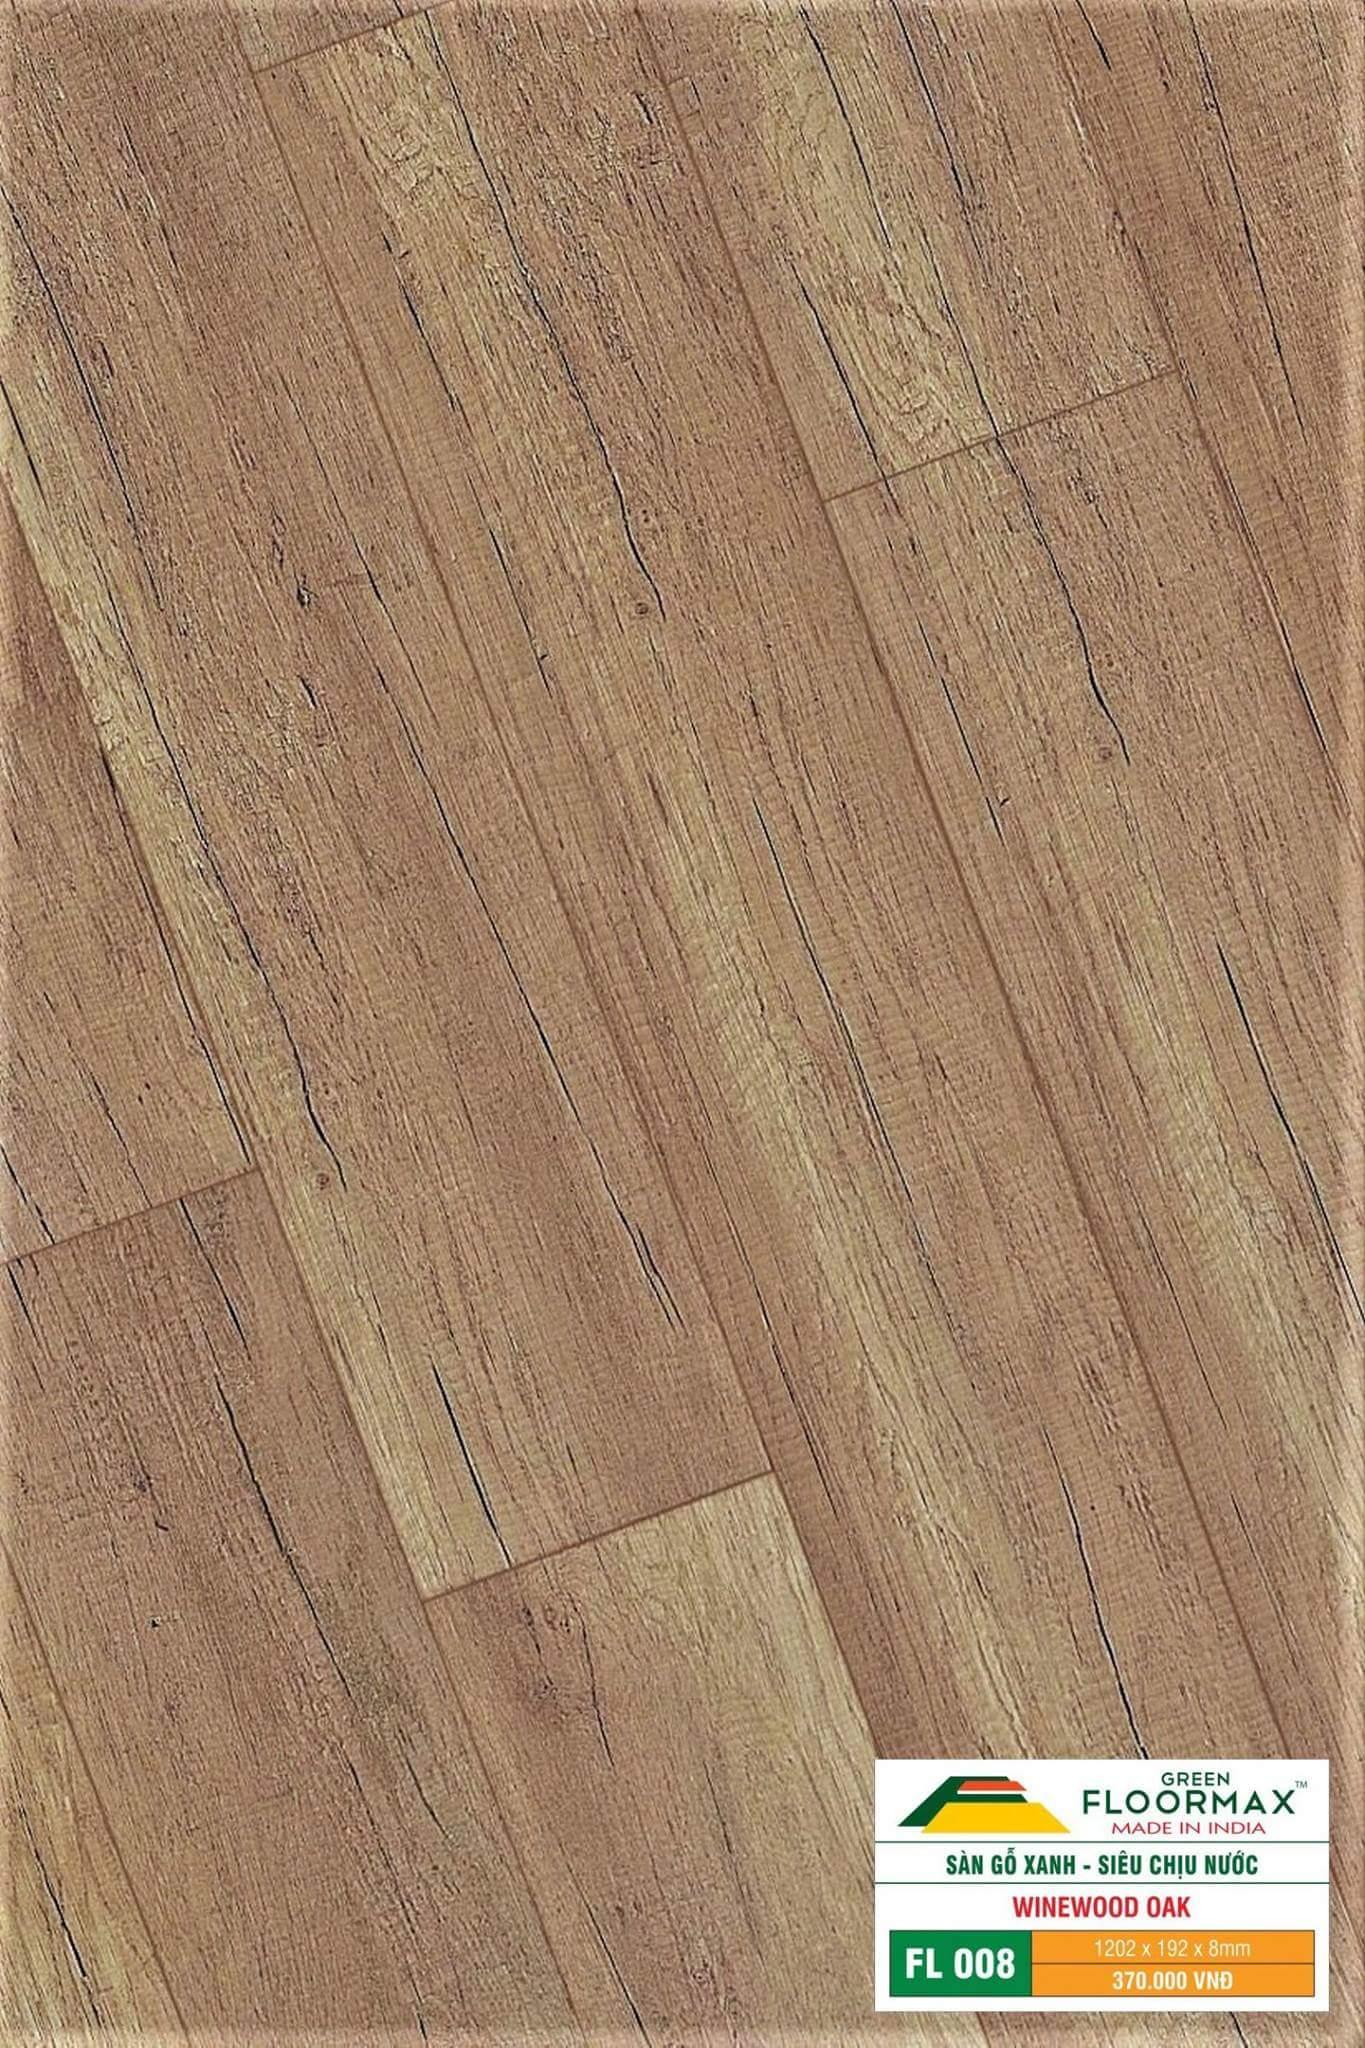 Sàn gỗ Ấn Độ FL 008 